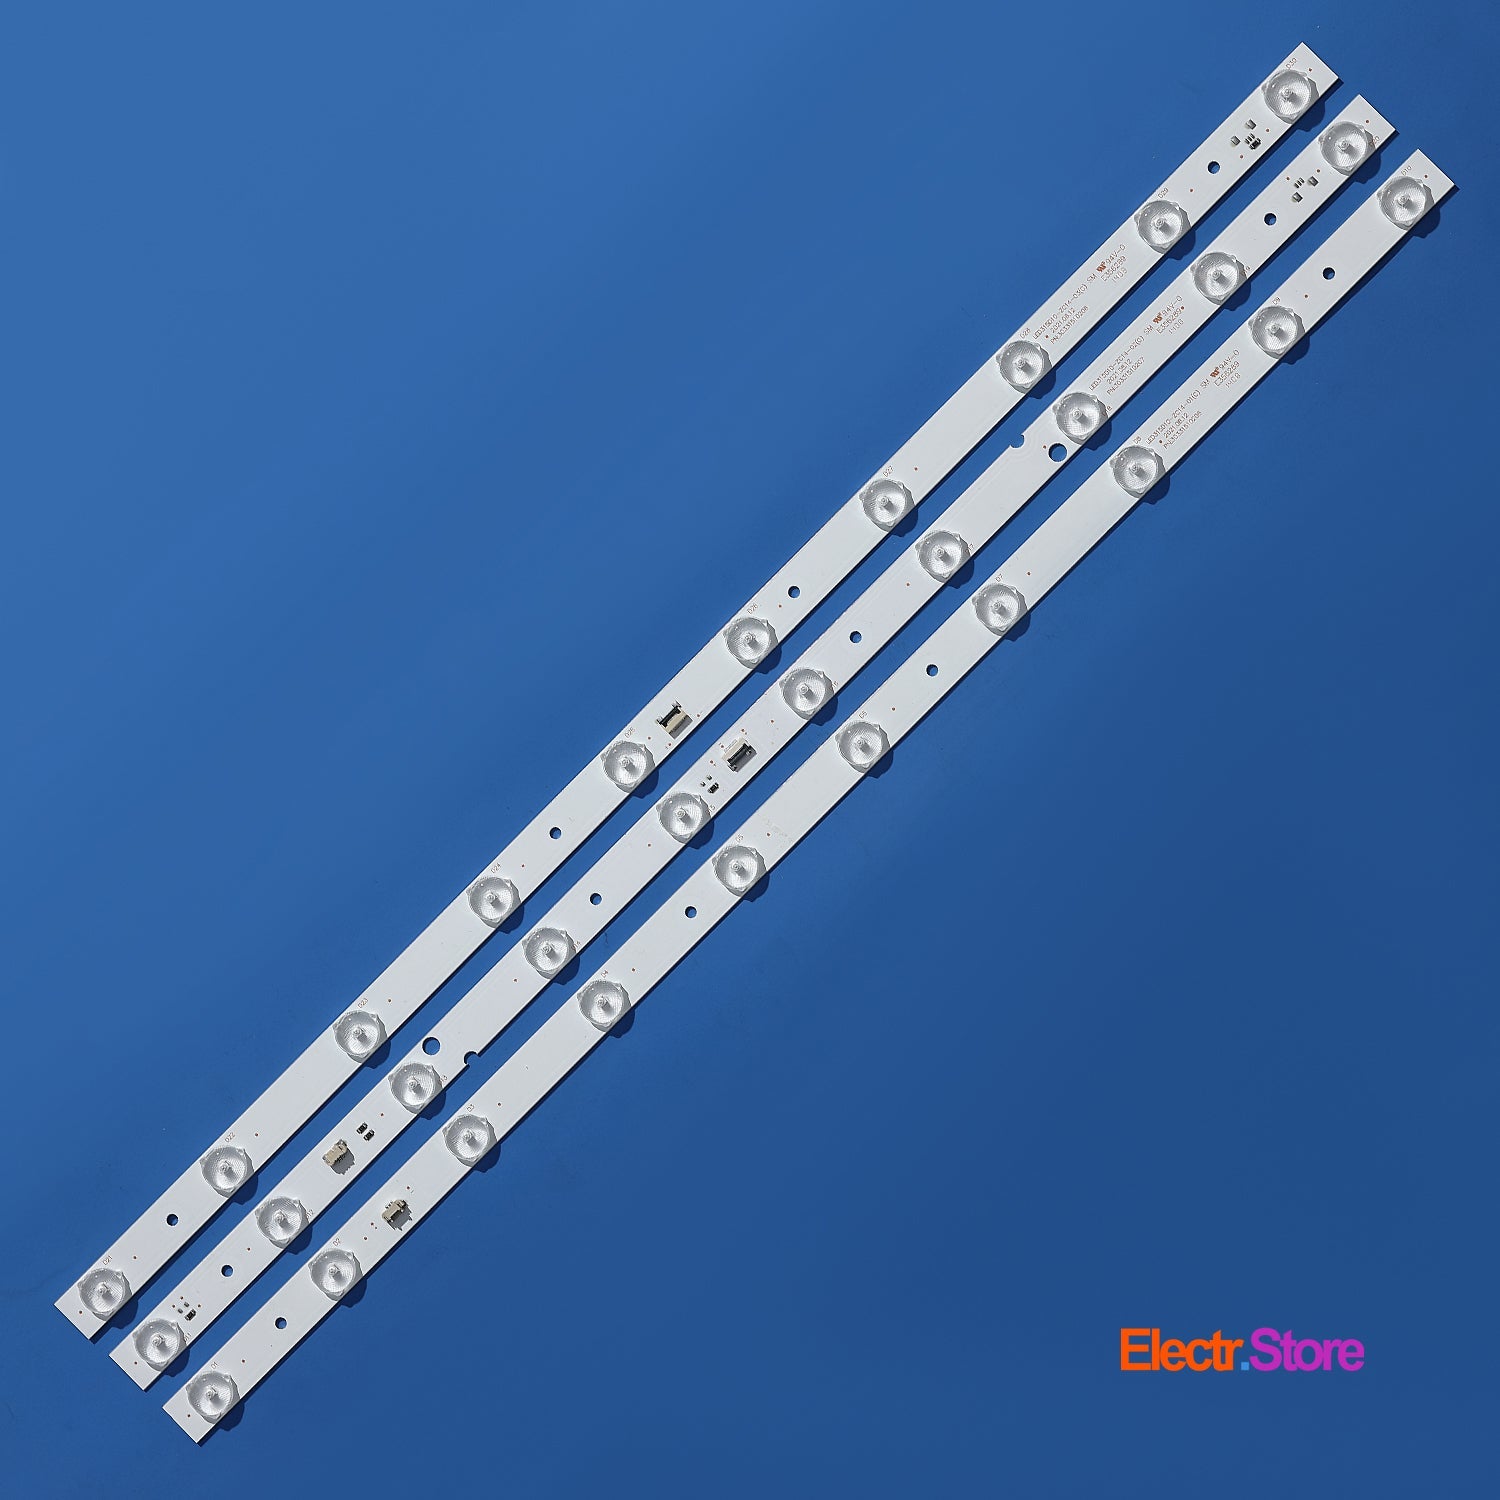 LED Backlight Strip Kits, 30331510211, LED315D10-ZC14-01(C), LED315D10-ZC14-01(D) (3 pcs/kit), for TV 32" JVC: LT-32M345 32" Haier JVC LED Backlights LED315D10-ZC14-01(C) Electr.Store